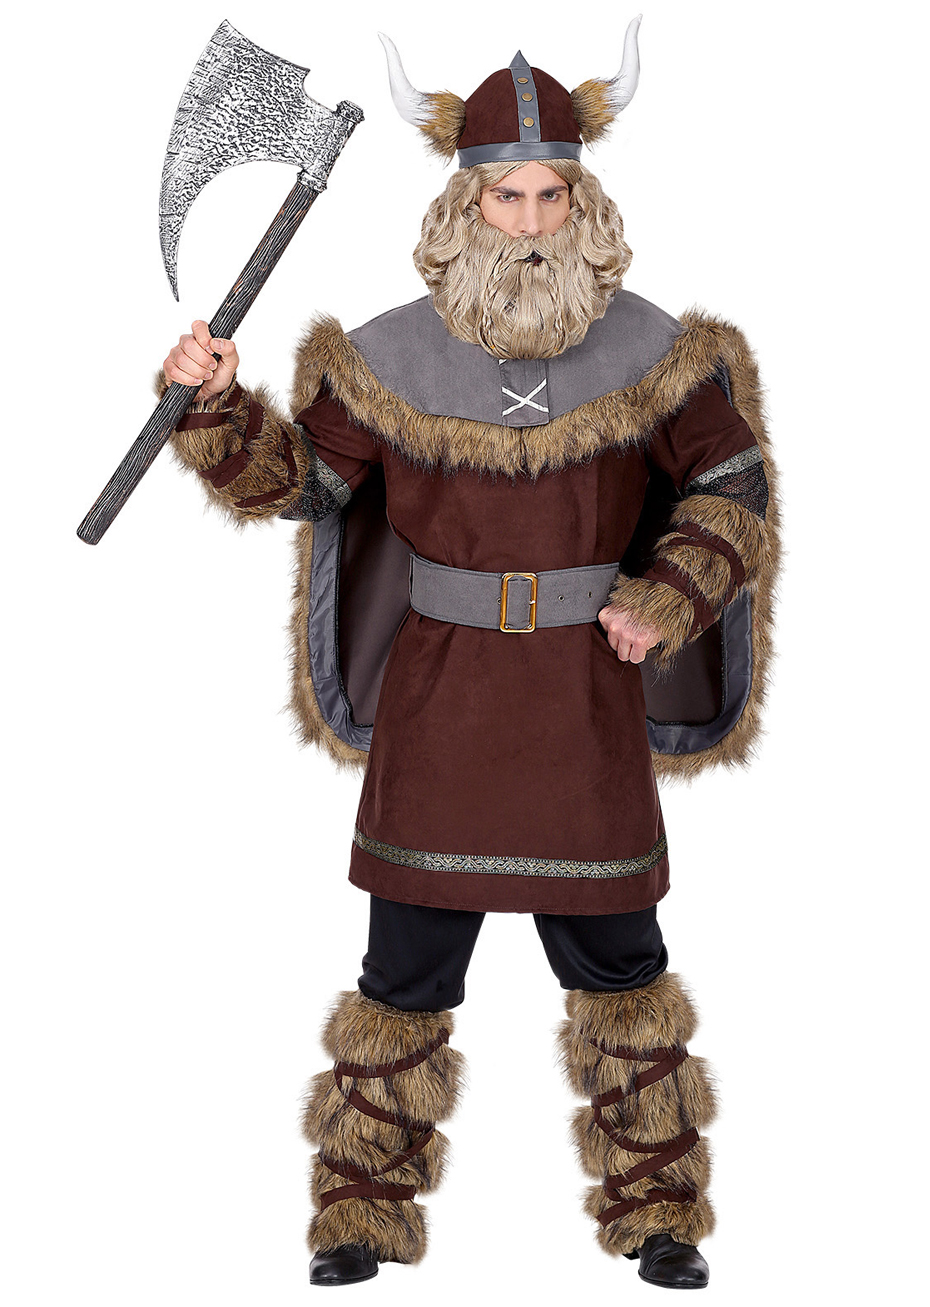 Déguisement viking pour enfant, costume carnaval viking, tunique et casque  viking, déguisement viking, déguisements enfant -  France